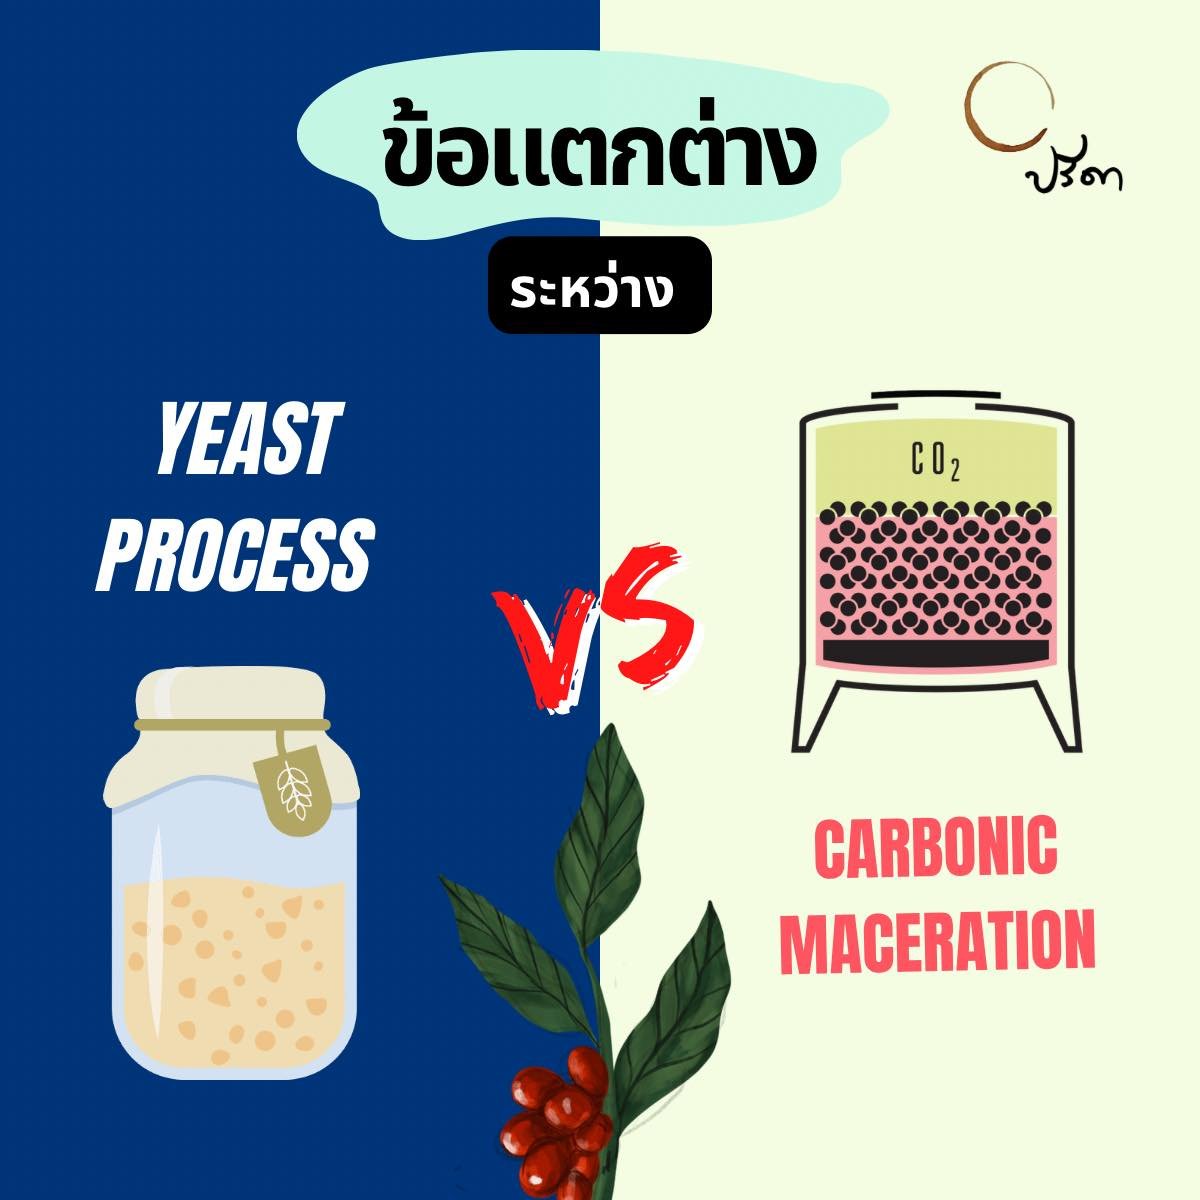 ข้อแตกต่างระหว่างโปรเสส Yeast Process VS Carbonic Maceration